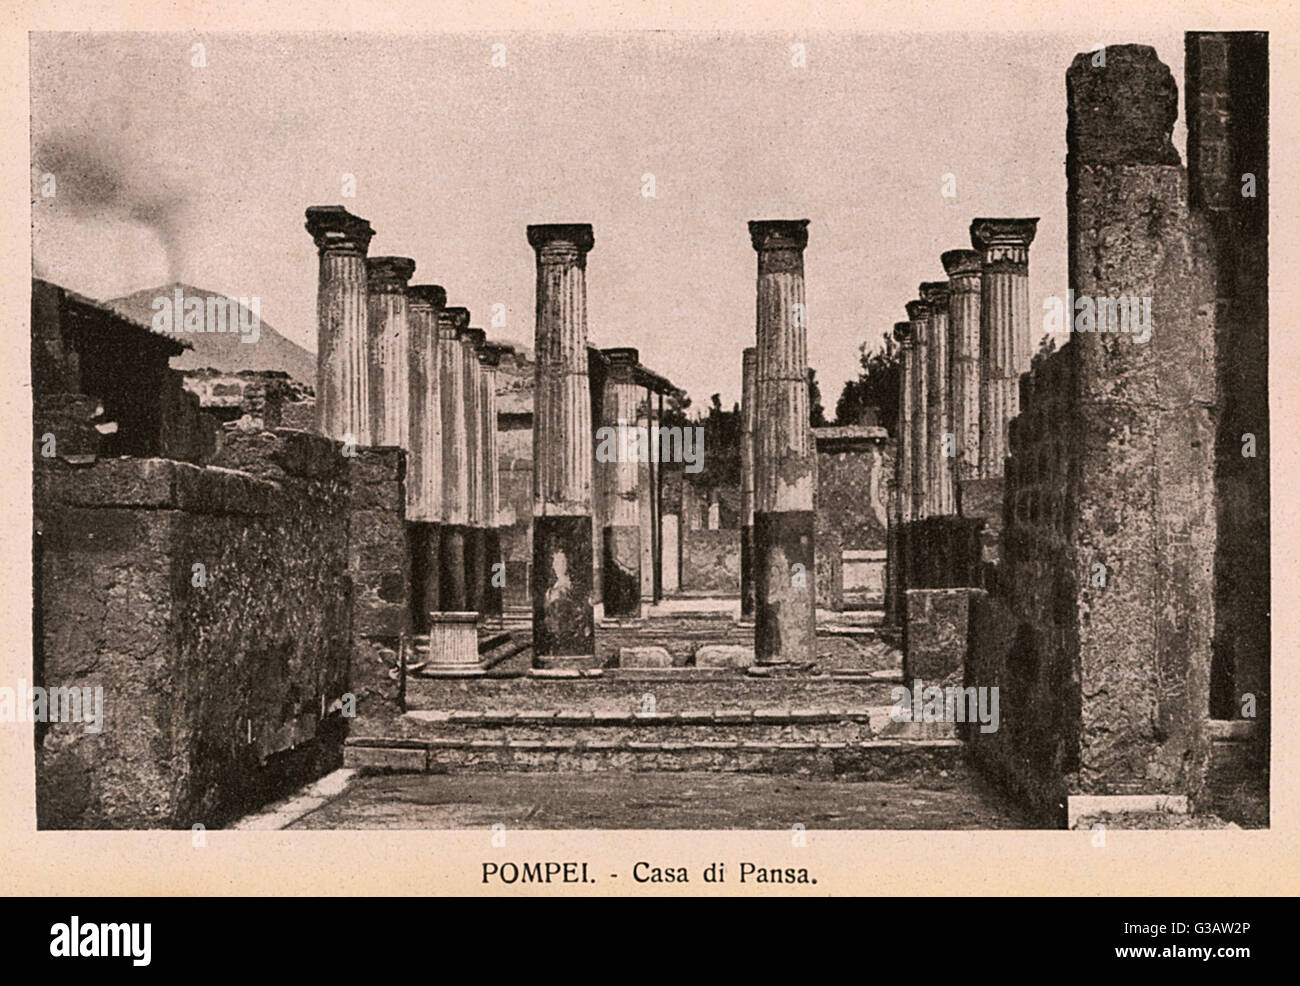 Pompeii - Italy - Casa di Pansa Stock Photo - Alamy